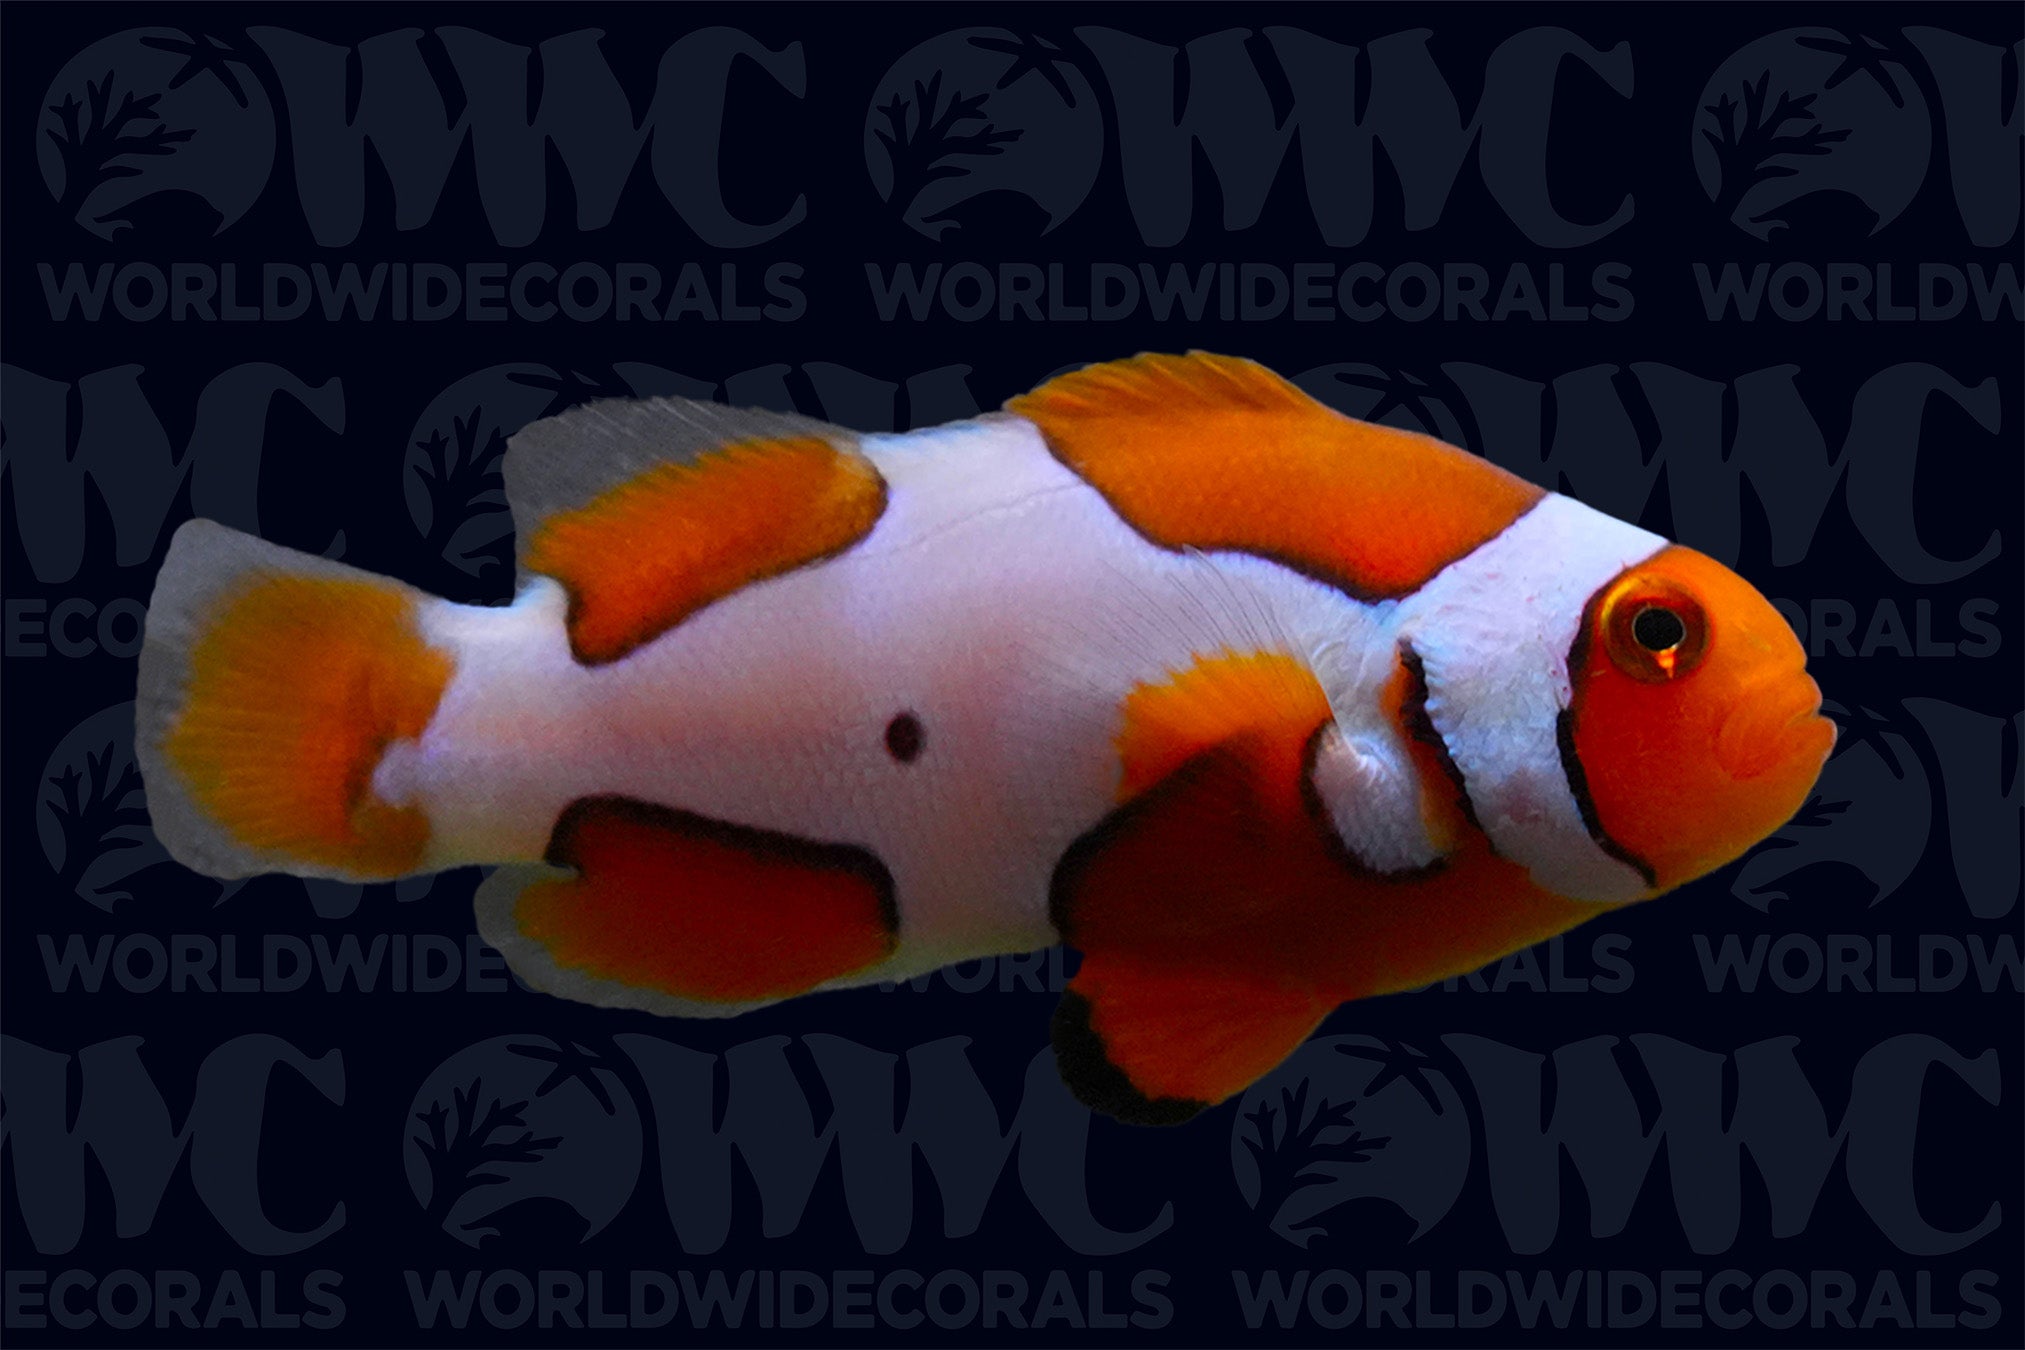 Picasso Percula Clownfish - Aquacultured - U.S.A.